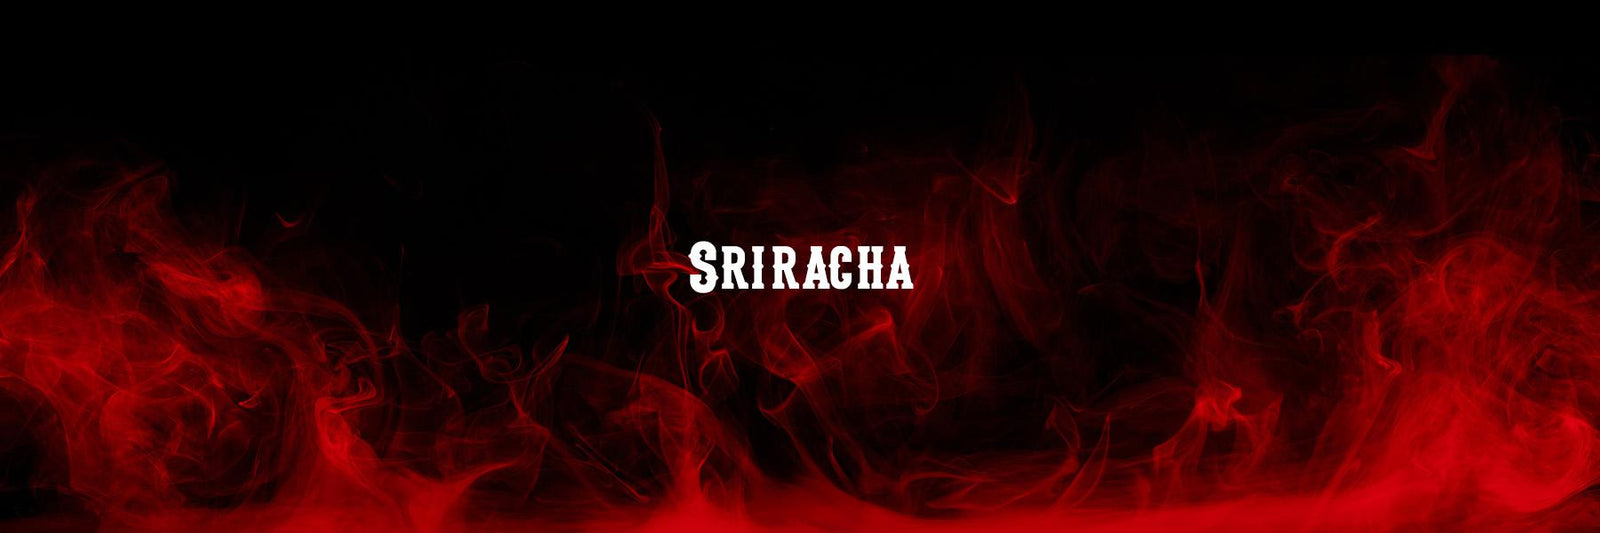 Kiawe Smoked Sriracha – HI SPICE